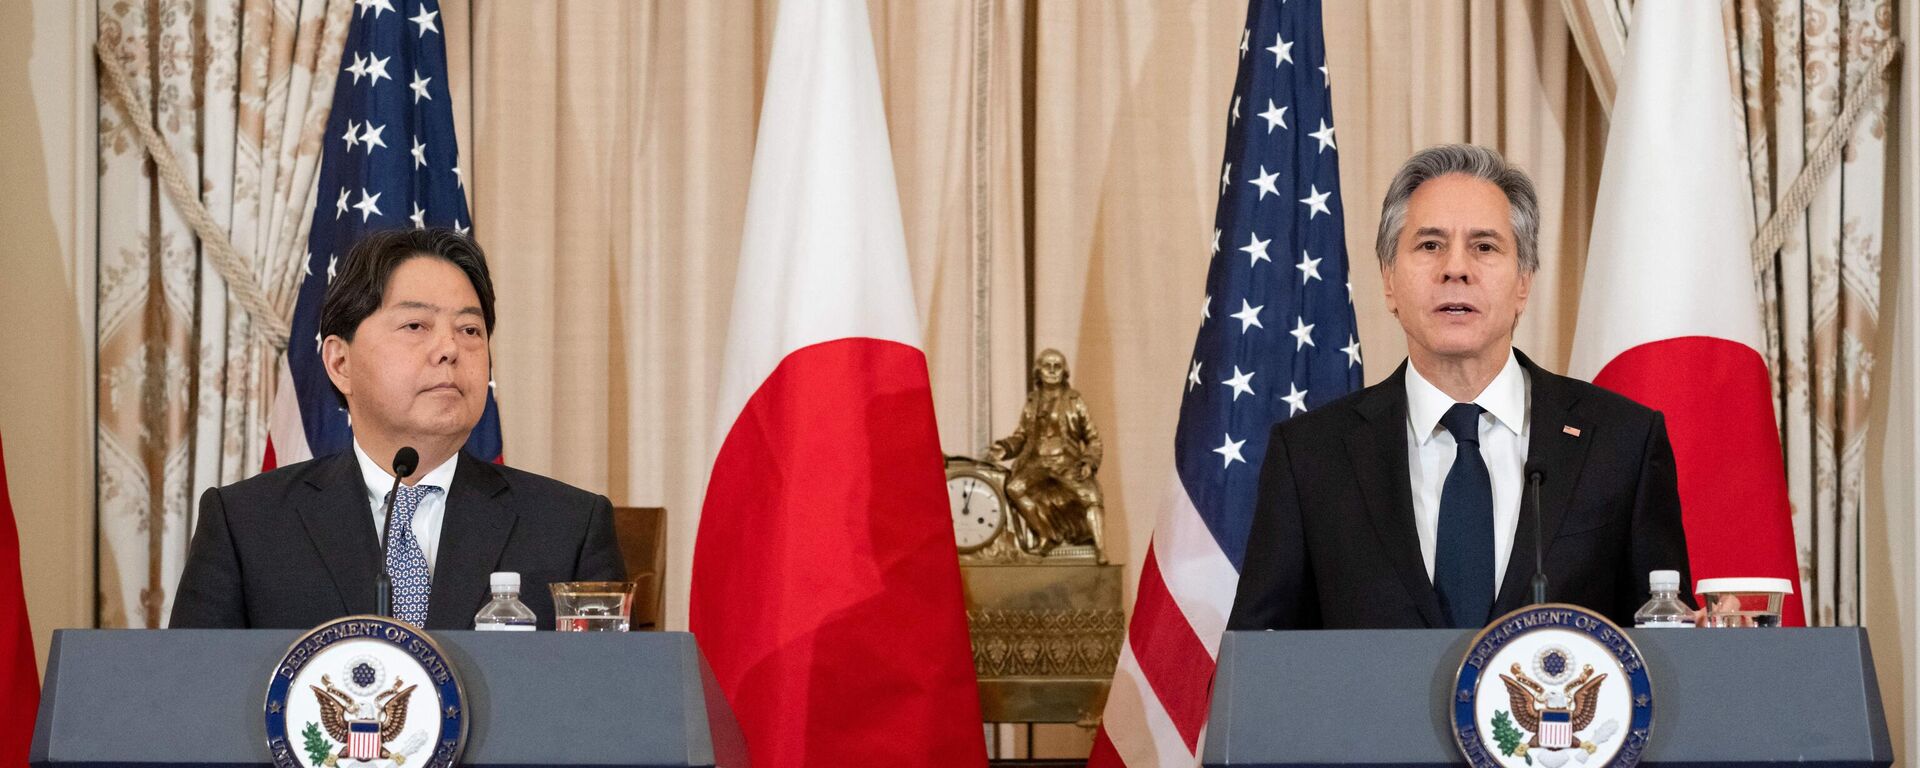 El ministro de Asuntos Exteriores de Japón, Yoshimasa Hayashi, y el secretario de Estado de EEUU, Antony Blinken, en Washington DC, el 11 de enero de 2023 - Sputnik Mundo, 1920, 12.01.2023